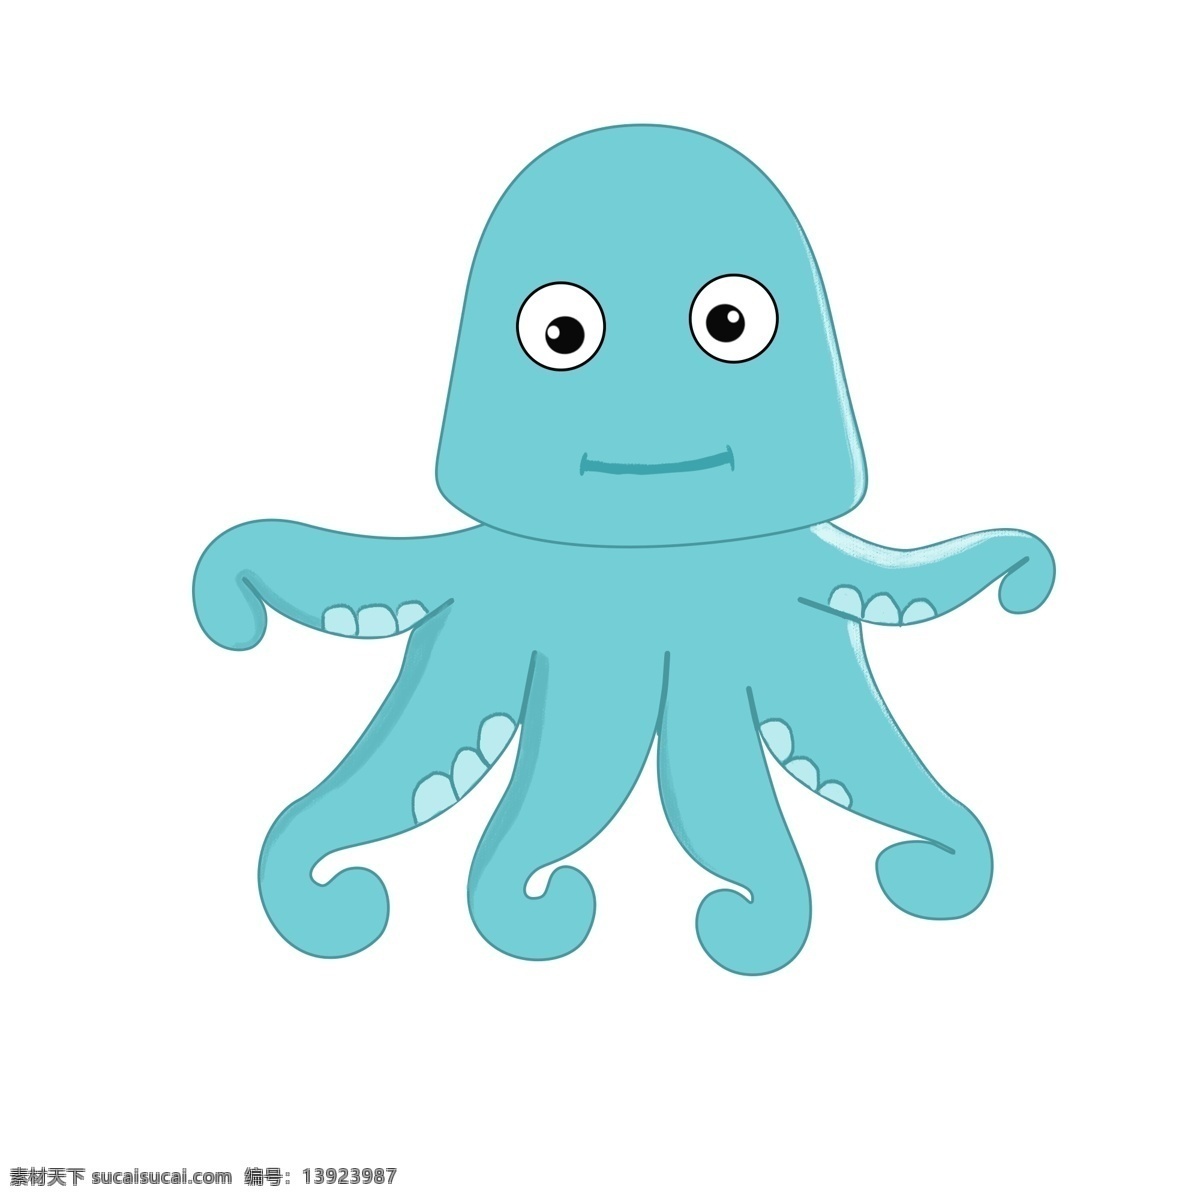 可爱的小章鱼 章鱼 夏季 可爱 八爪鱼 蓝色